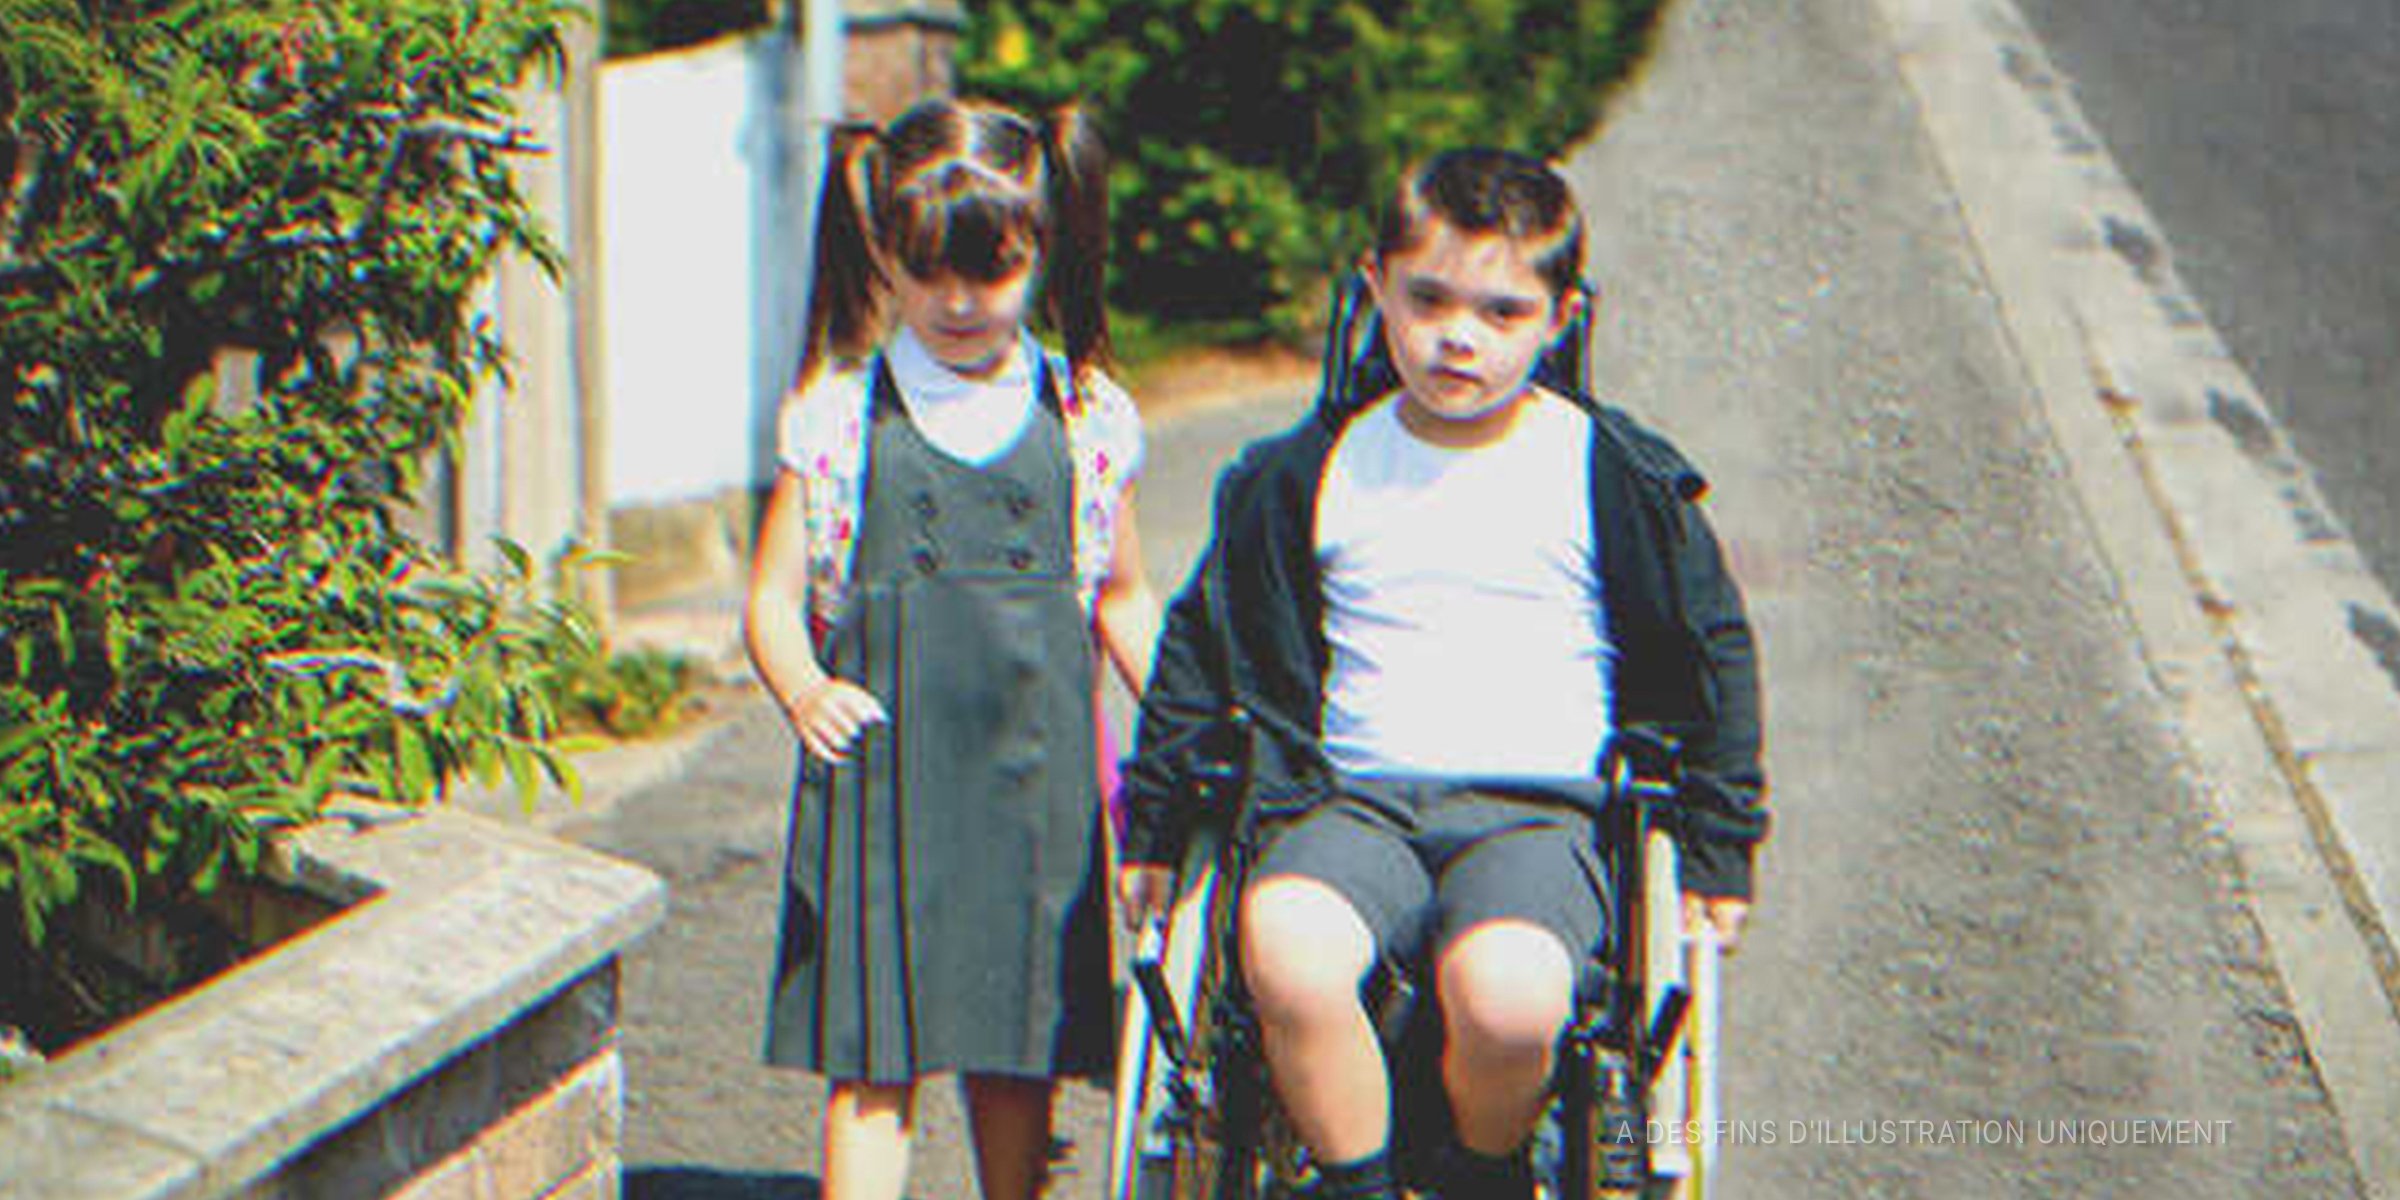 Un petit garçon en fauteuil roulant à côté d'une petite fille | Source : Shutterstock